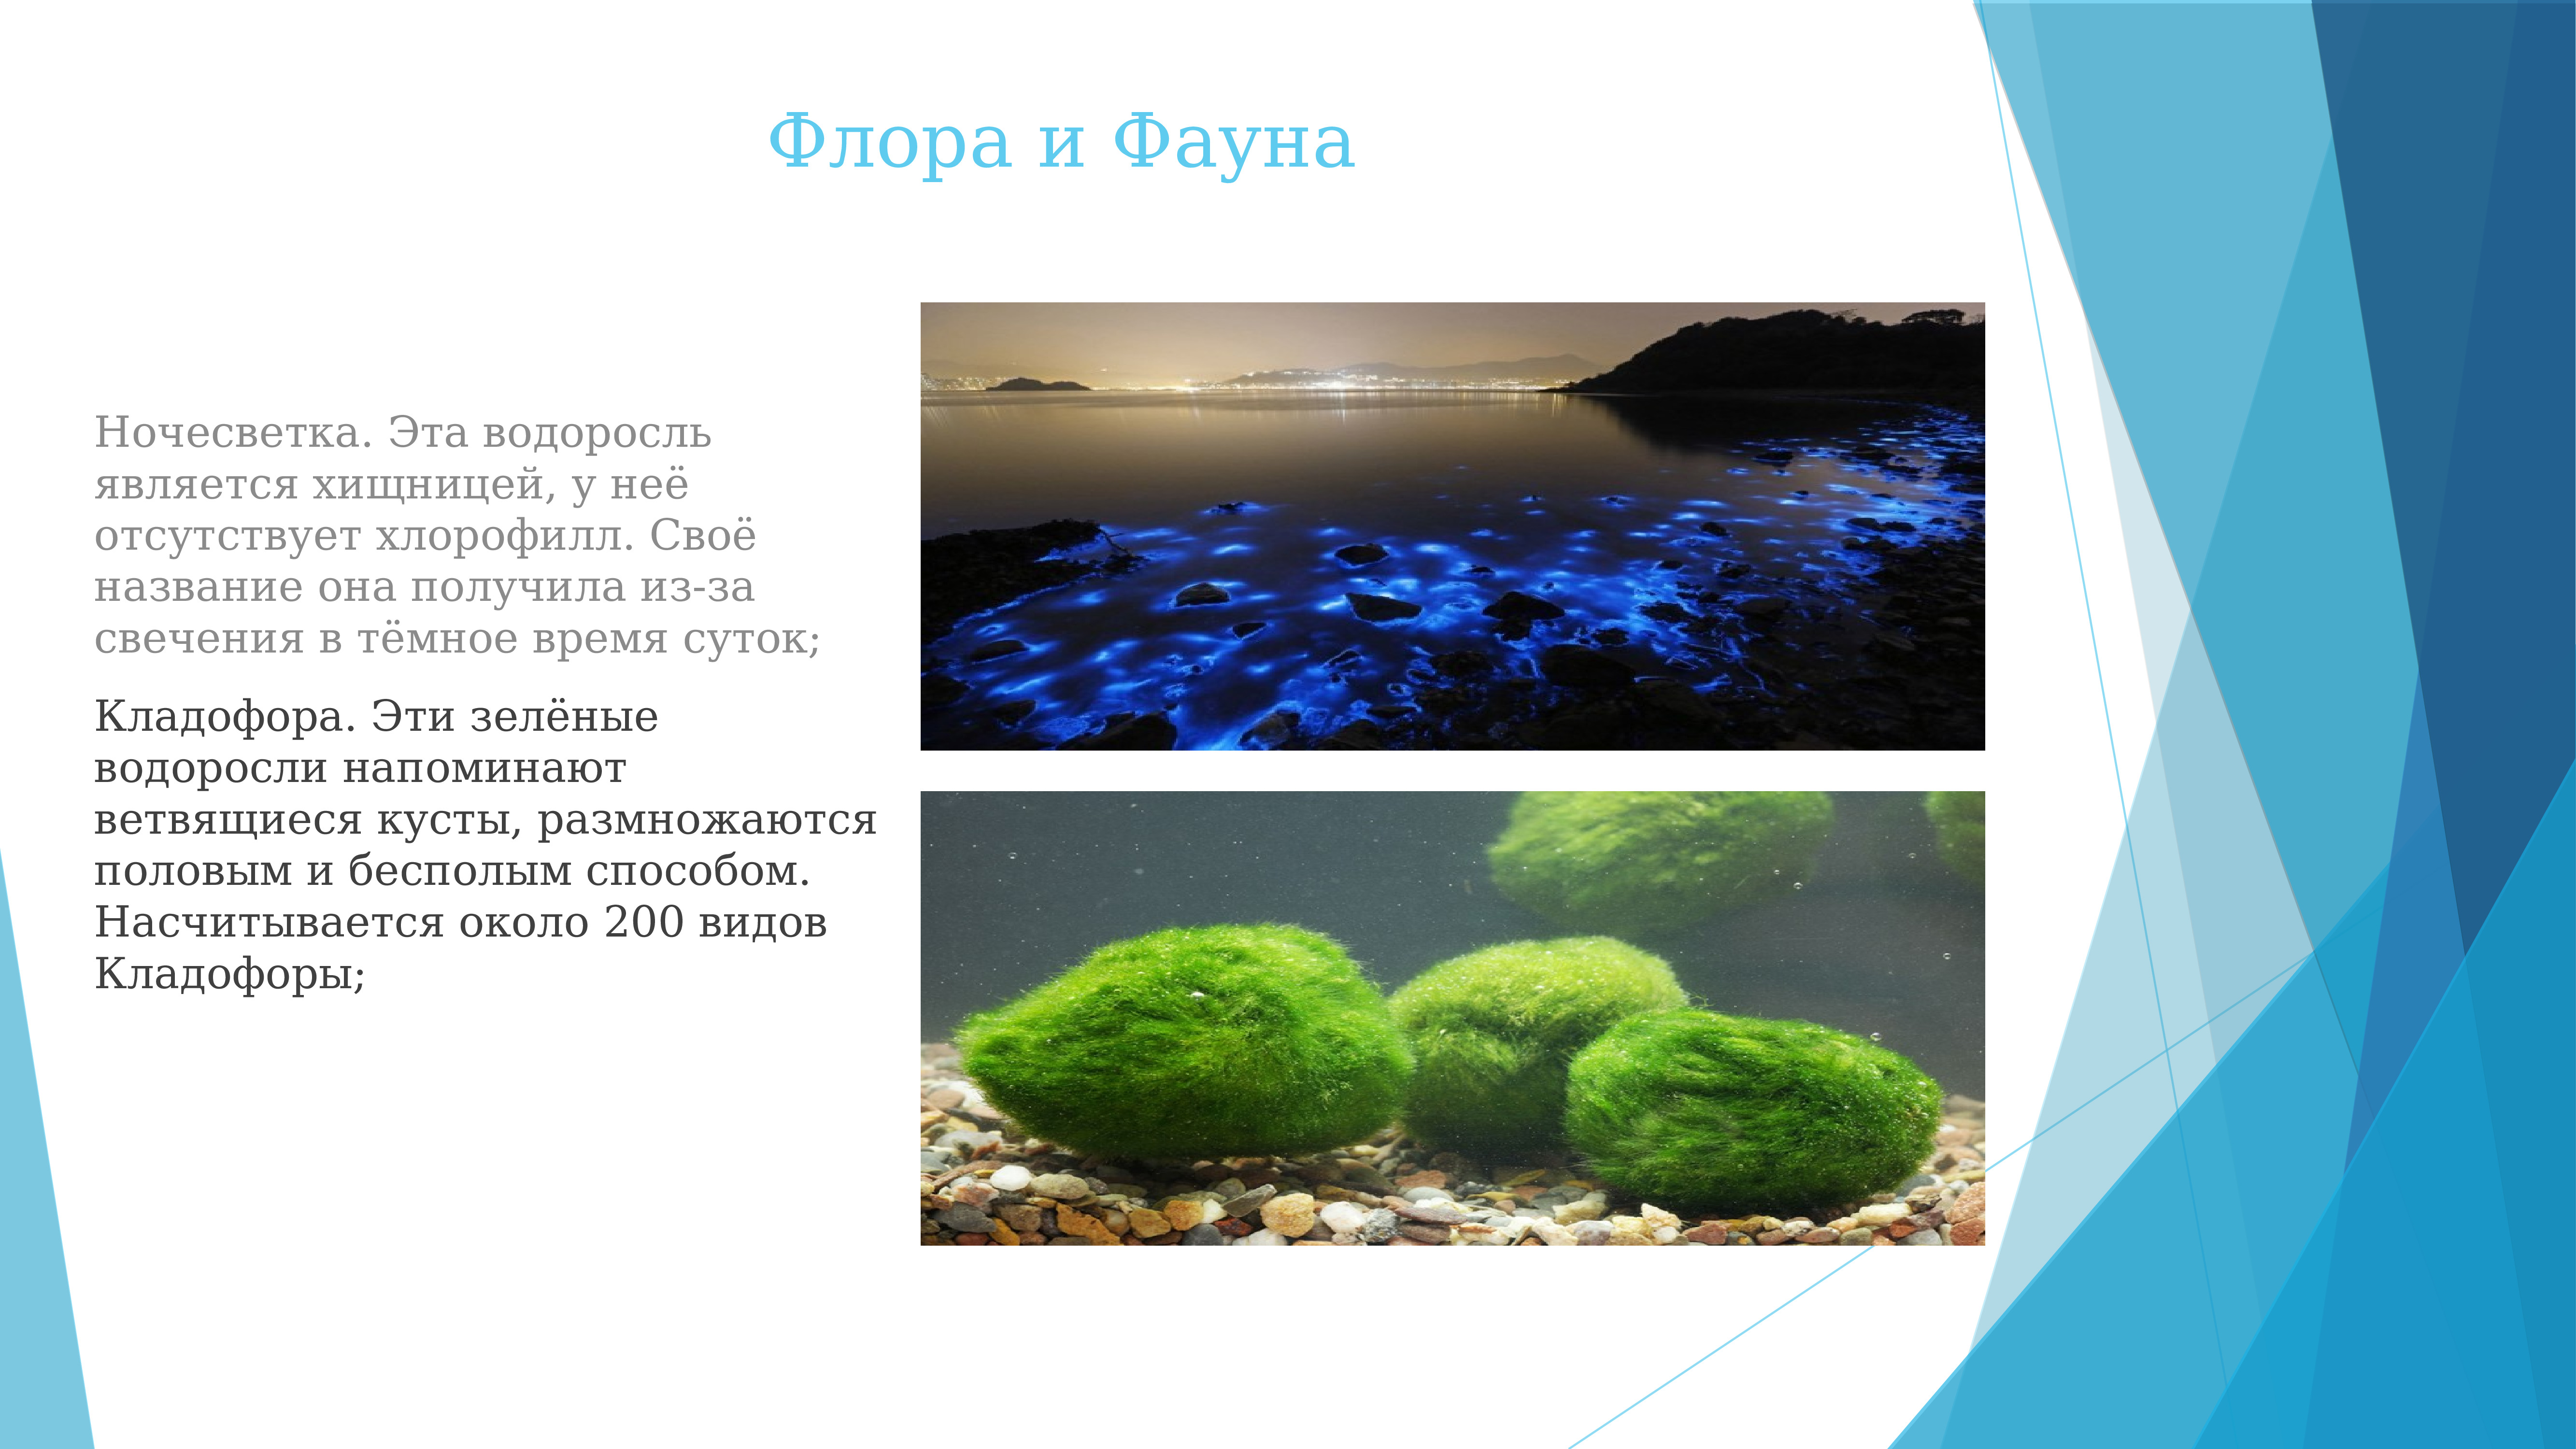 Флора и фауна черного моря презентация